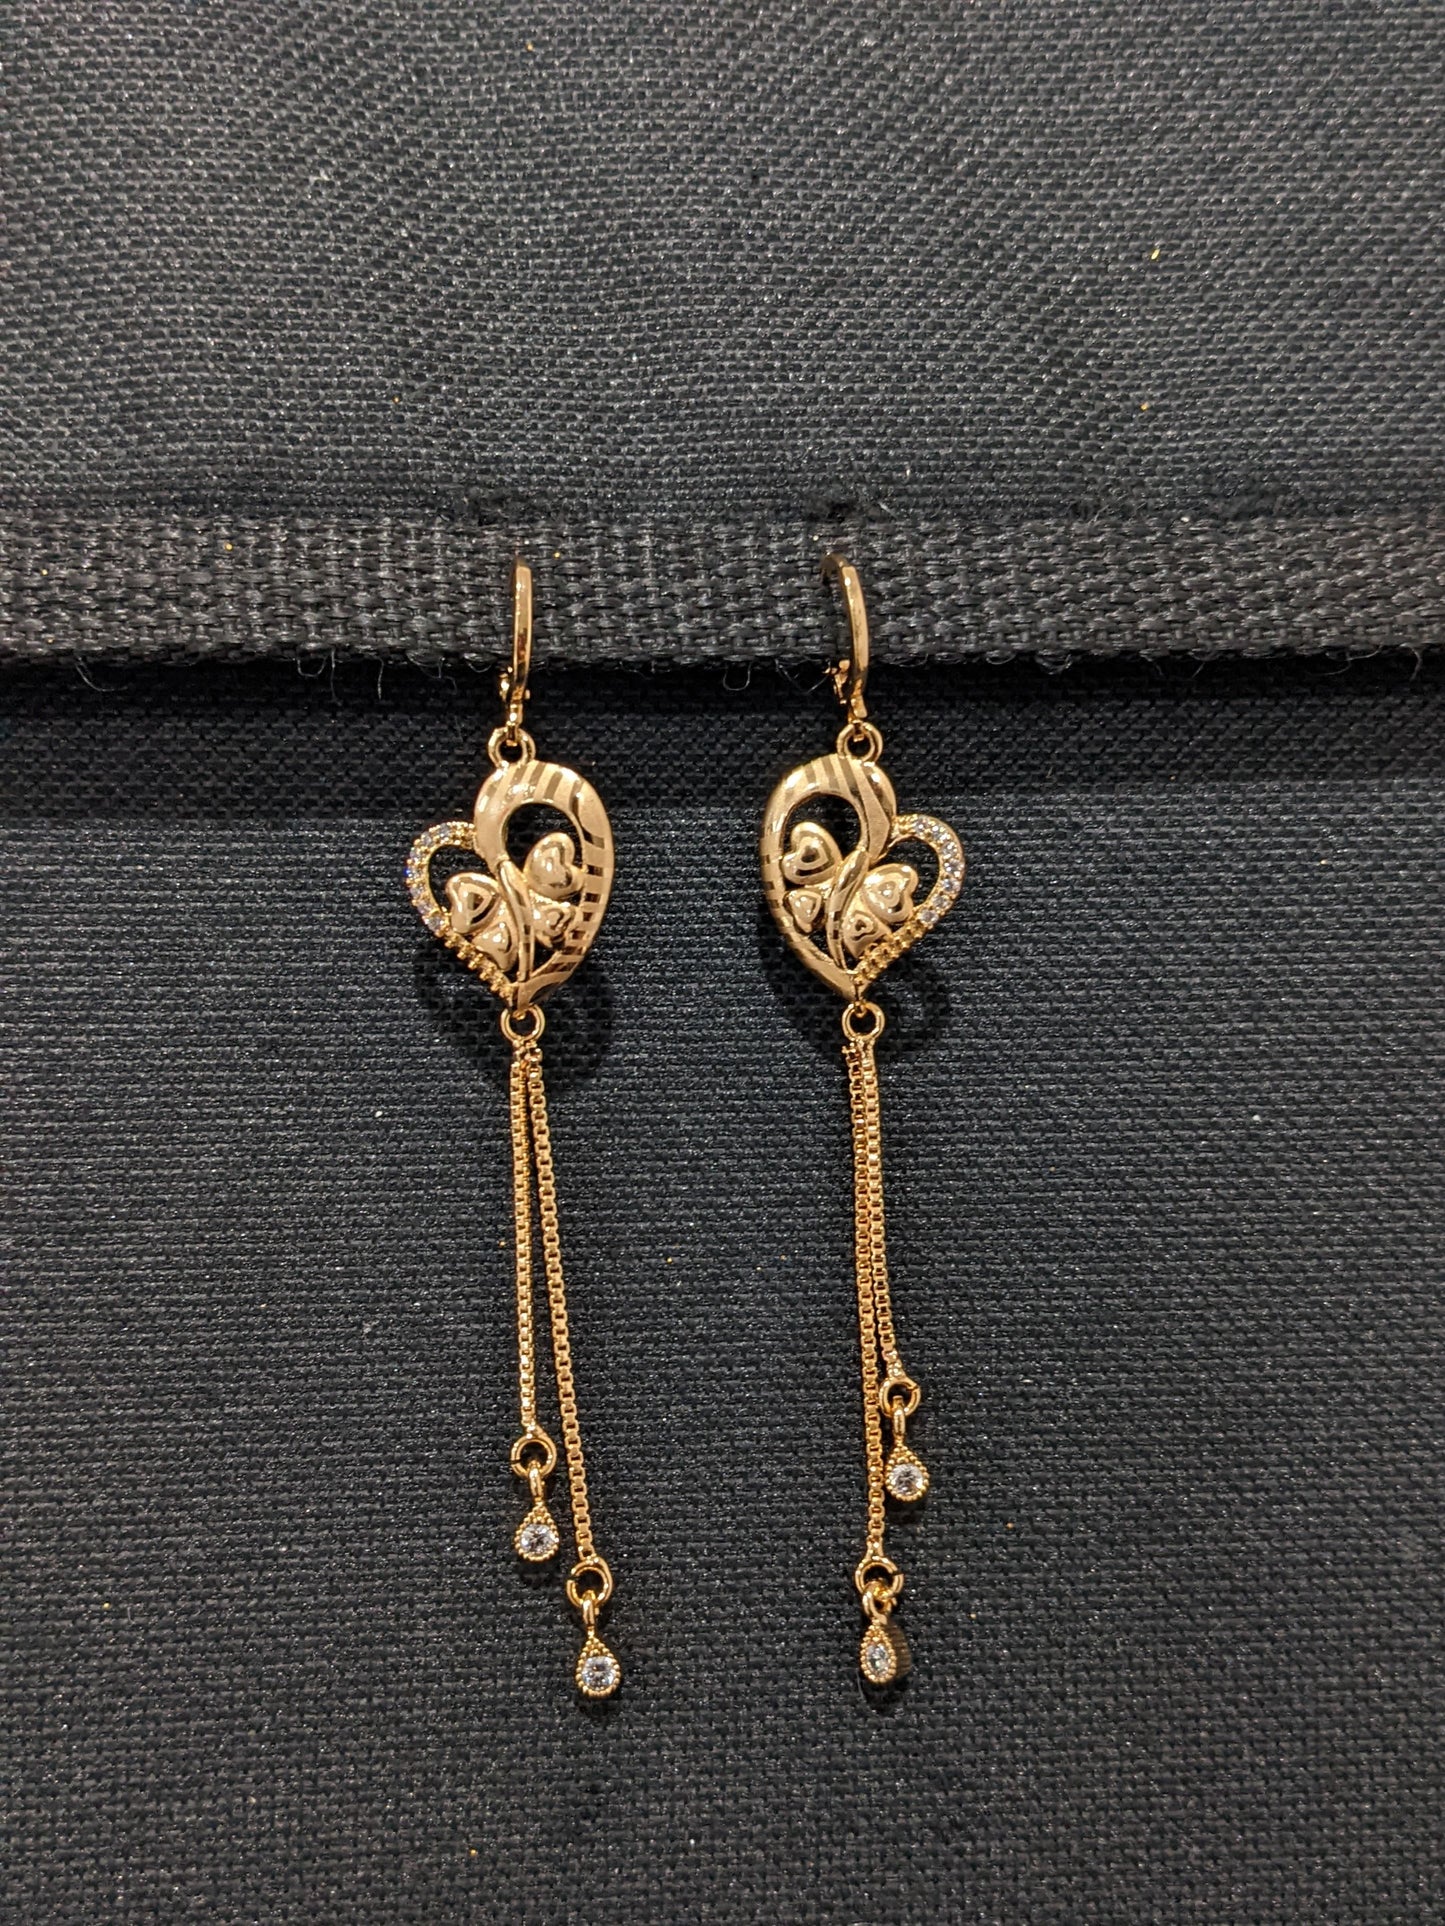 Butterfly Heart design ring style long dangle CZ earrings